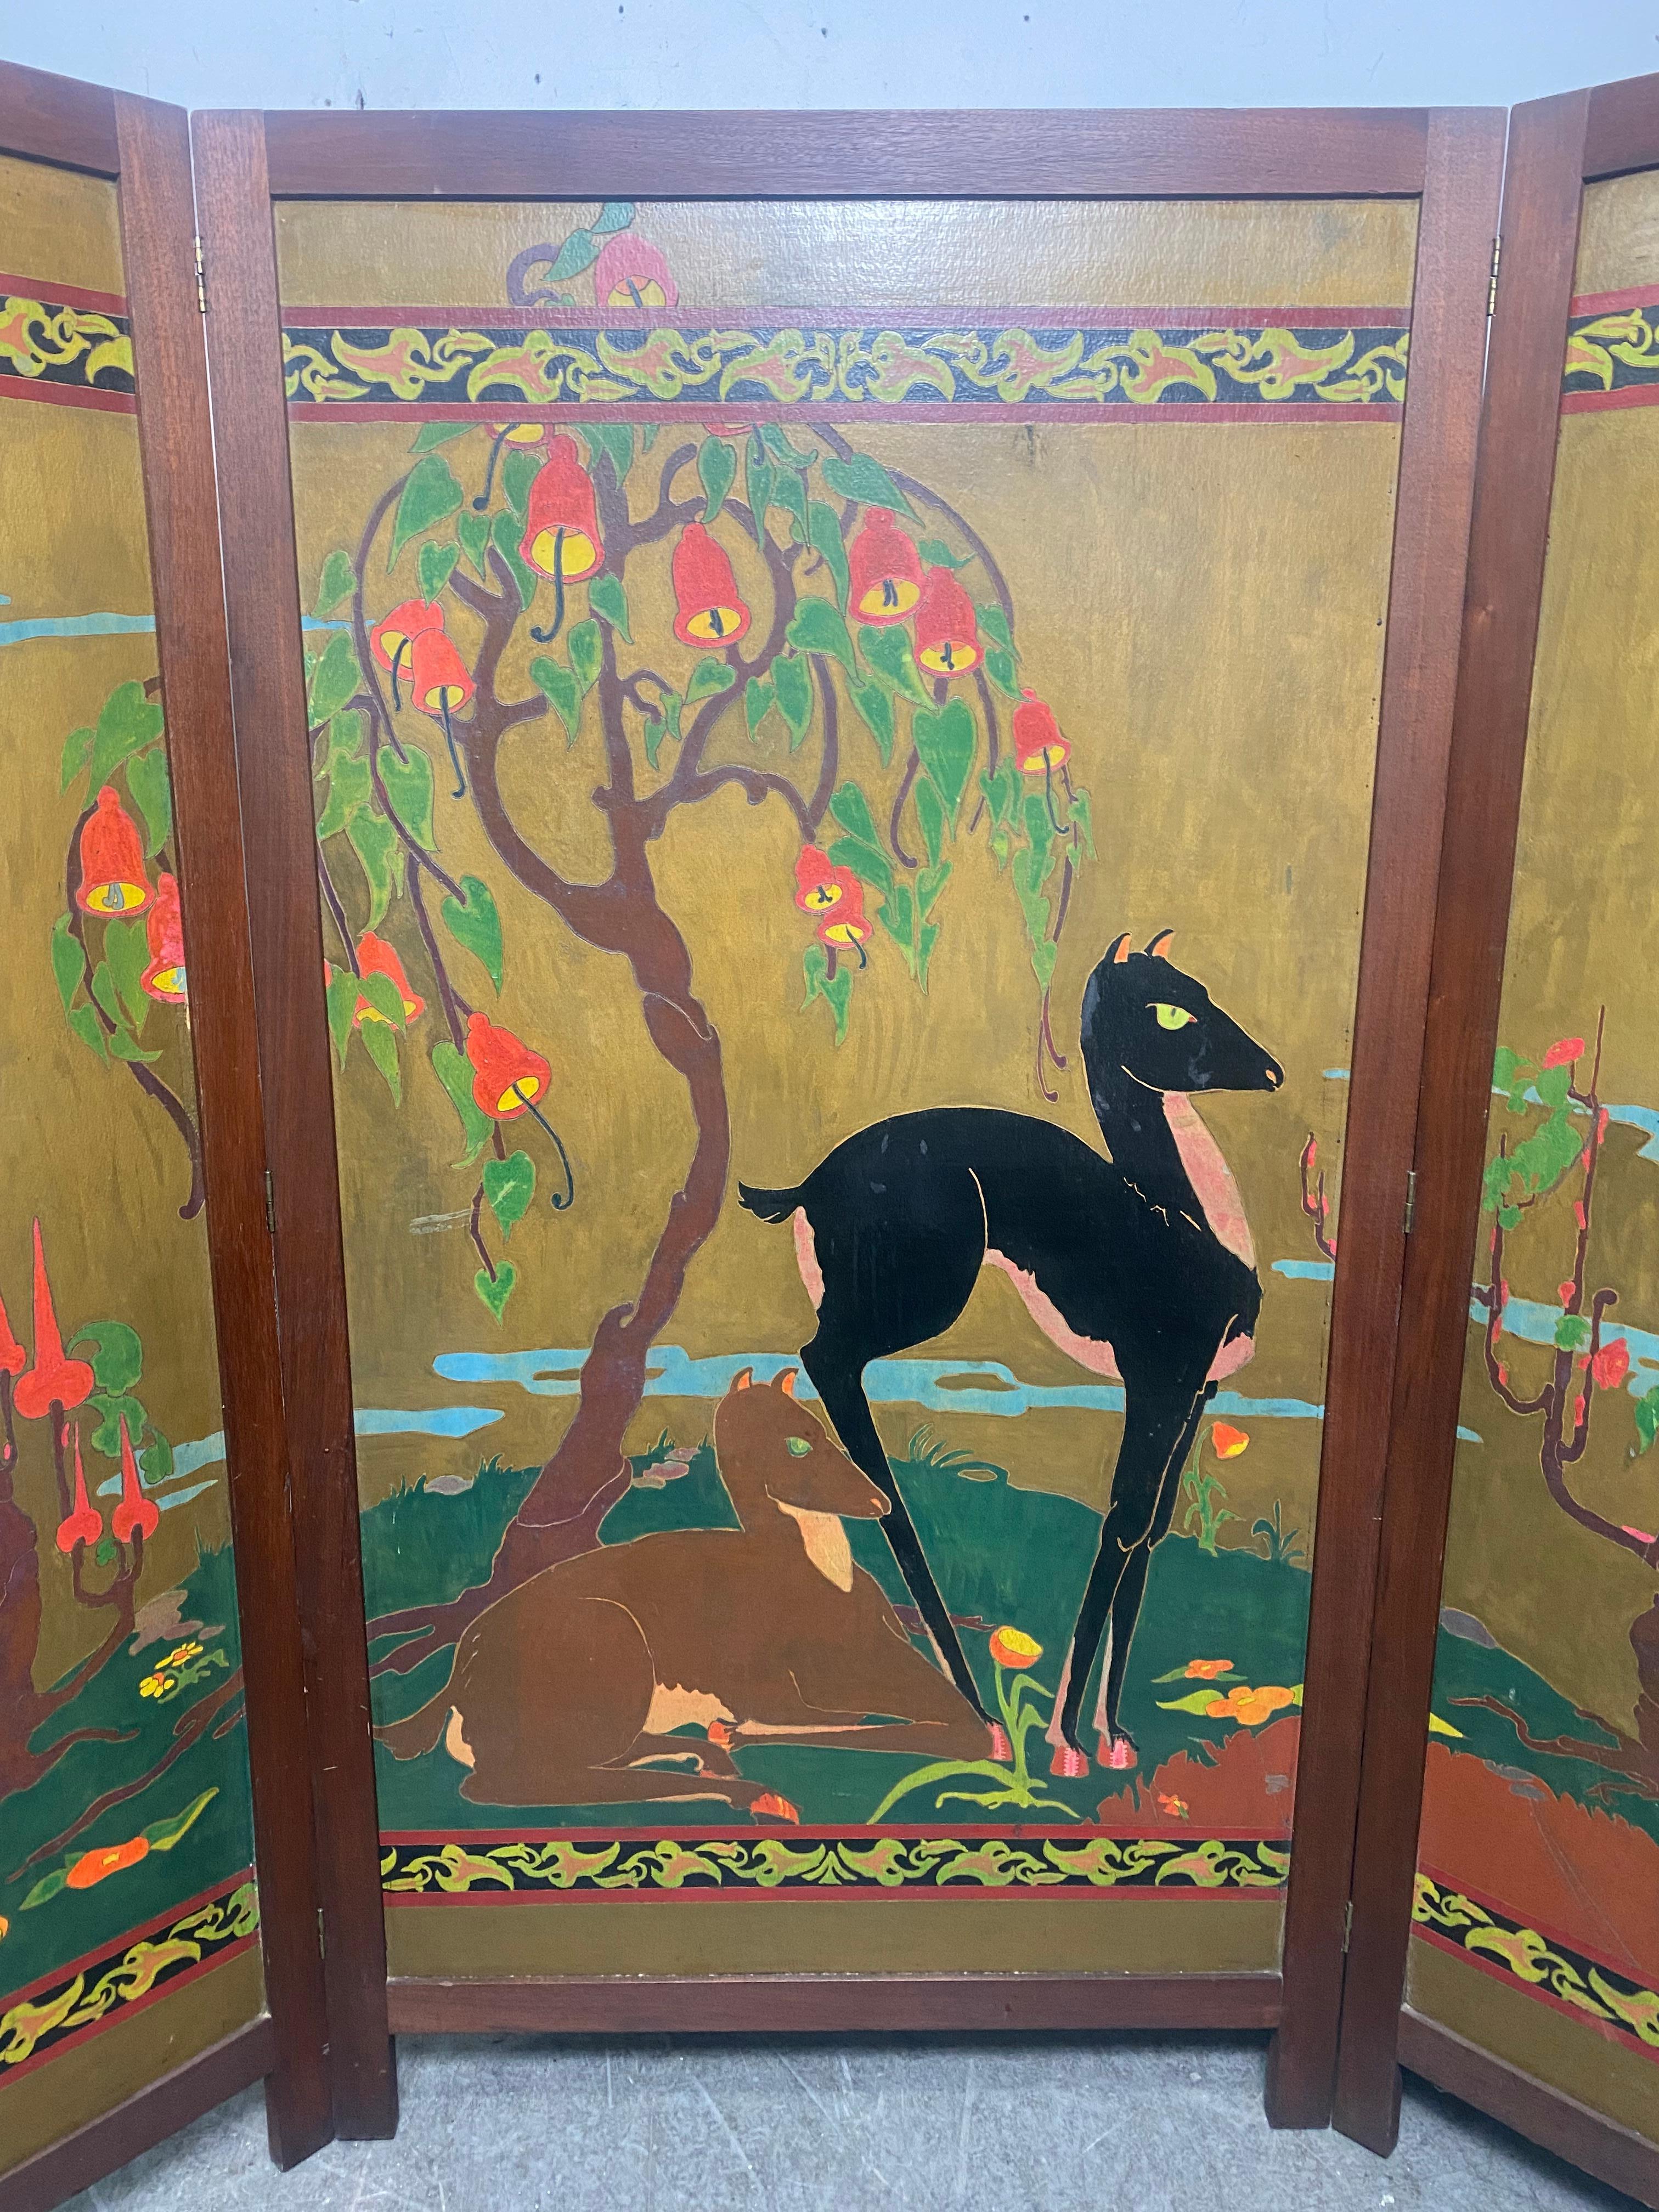 Stilisierter handgemalter Art Deco Paravent / Raumteiler signiert Marian B. Jeffries um 1928. Erstaunliche Farben. Charmantes Motiv. Bestehend aus drei Eiche gerahmt Panels, Mitte Messung 33 